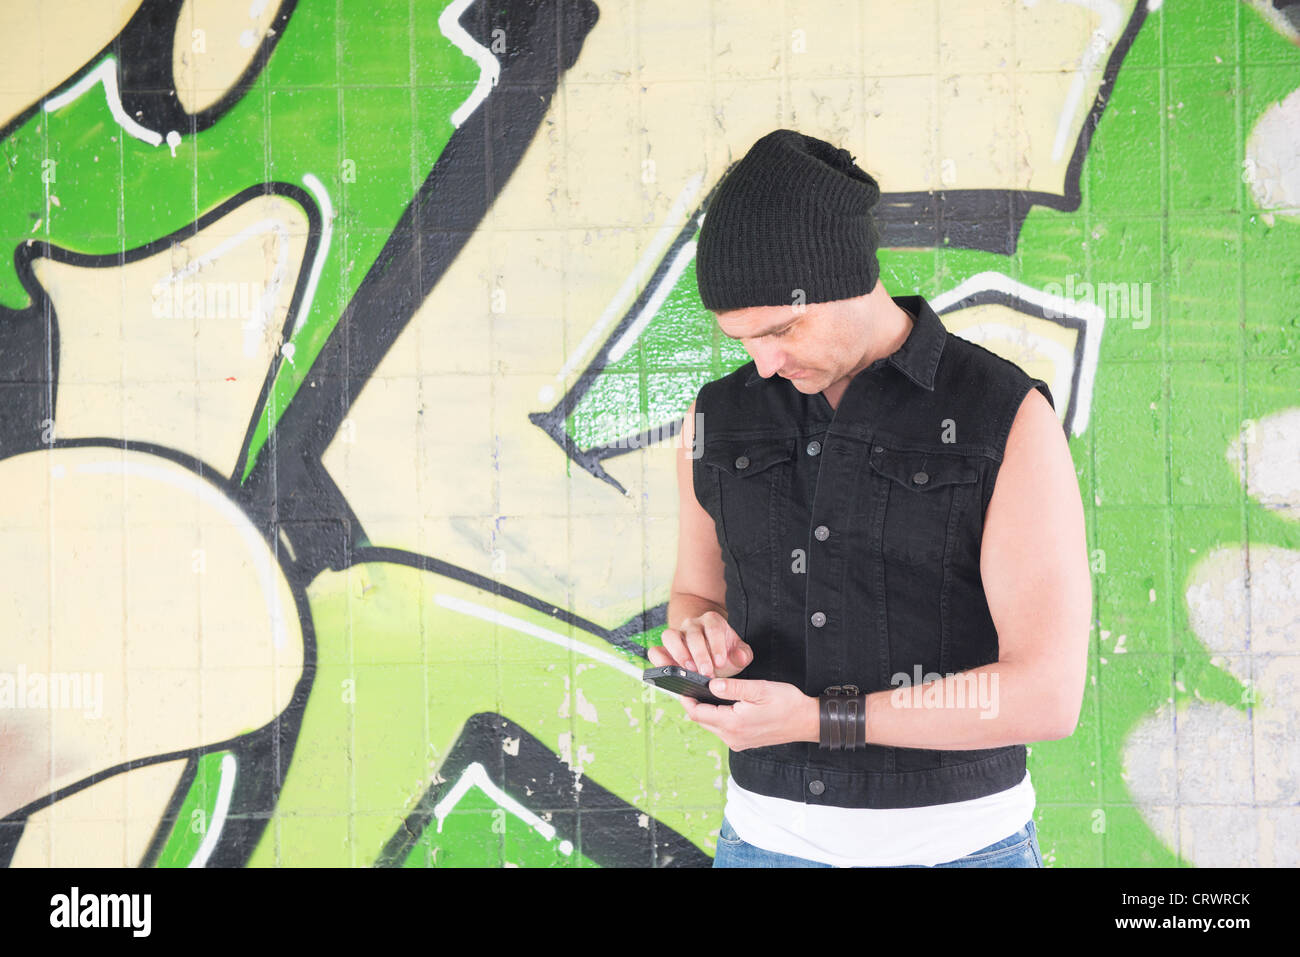 Mann trägt eine Mütze und stand vor Graffiti-Wand sendet eine Nachricht auf seinem Handy Stockfoto